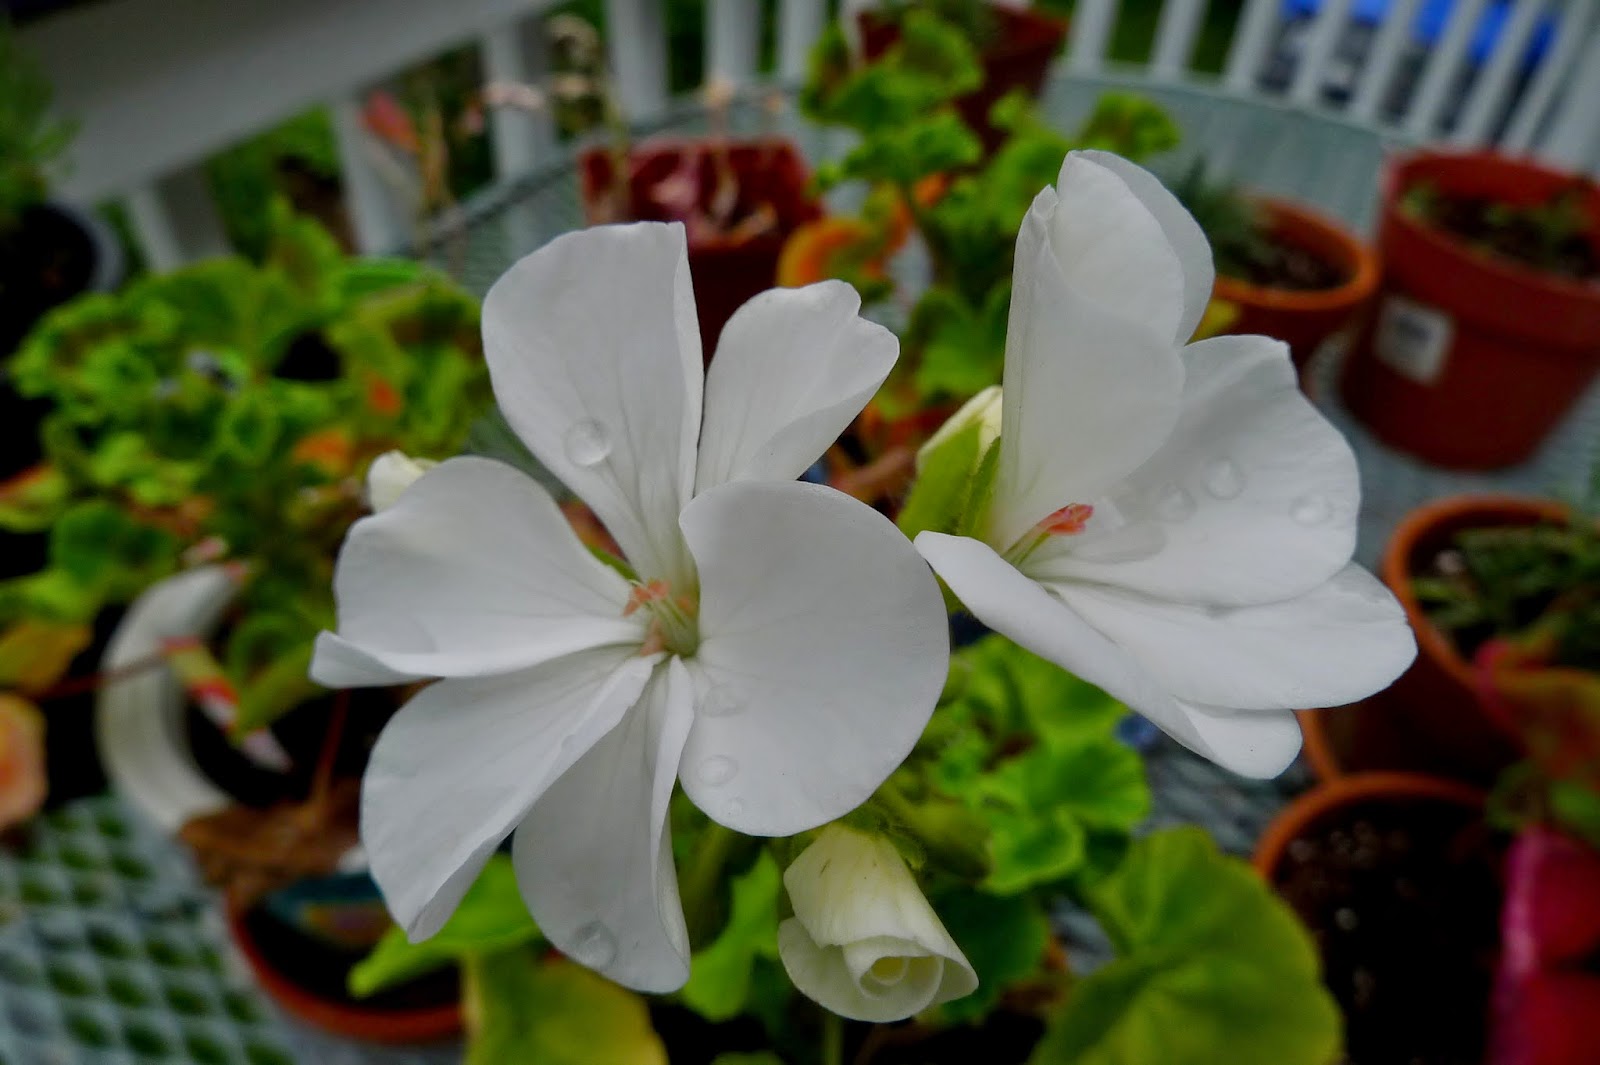 White geranium